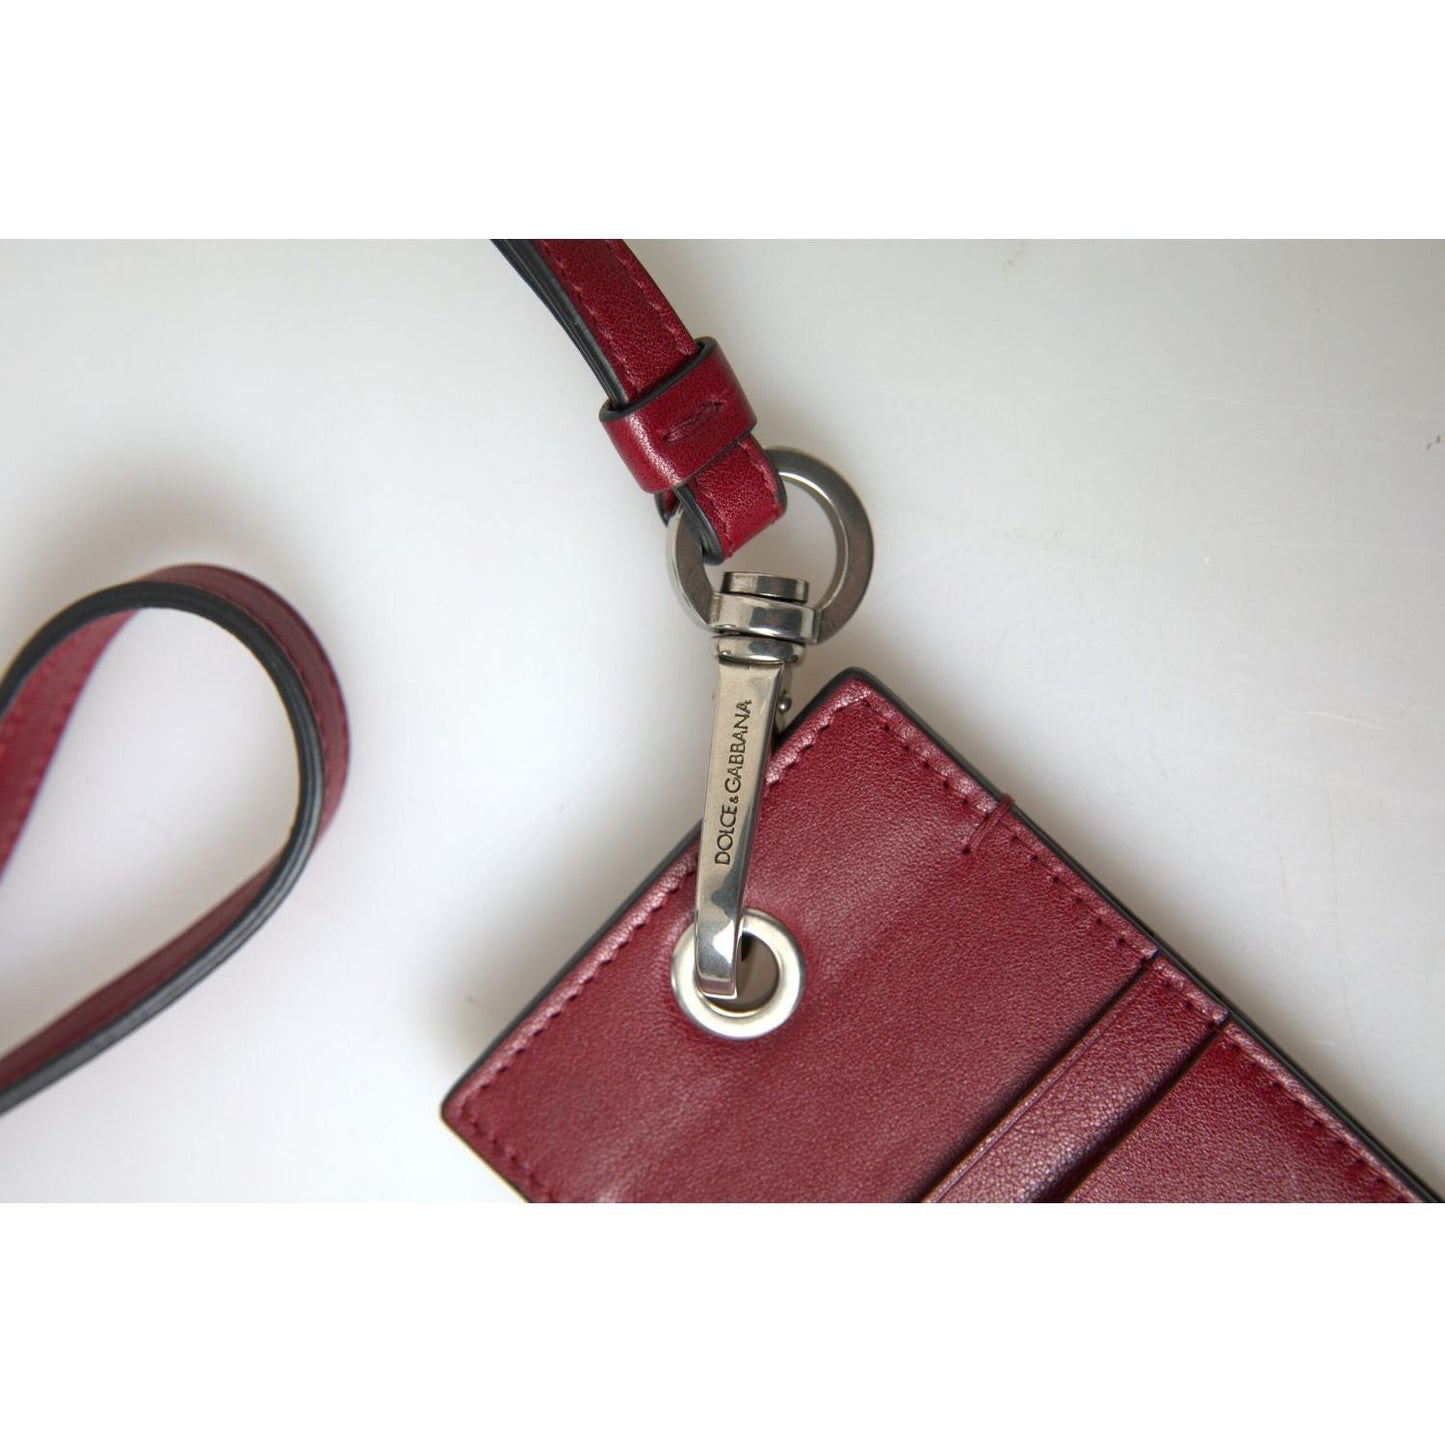 Dolce & Gabbana Elegant Red Leather Cardholder with Lanyard red-leather-lanyard-logo-slim-card-holder-men-wallet